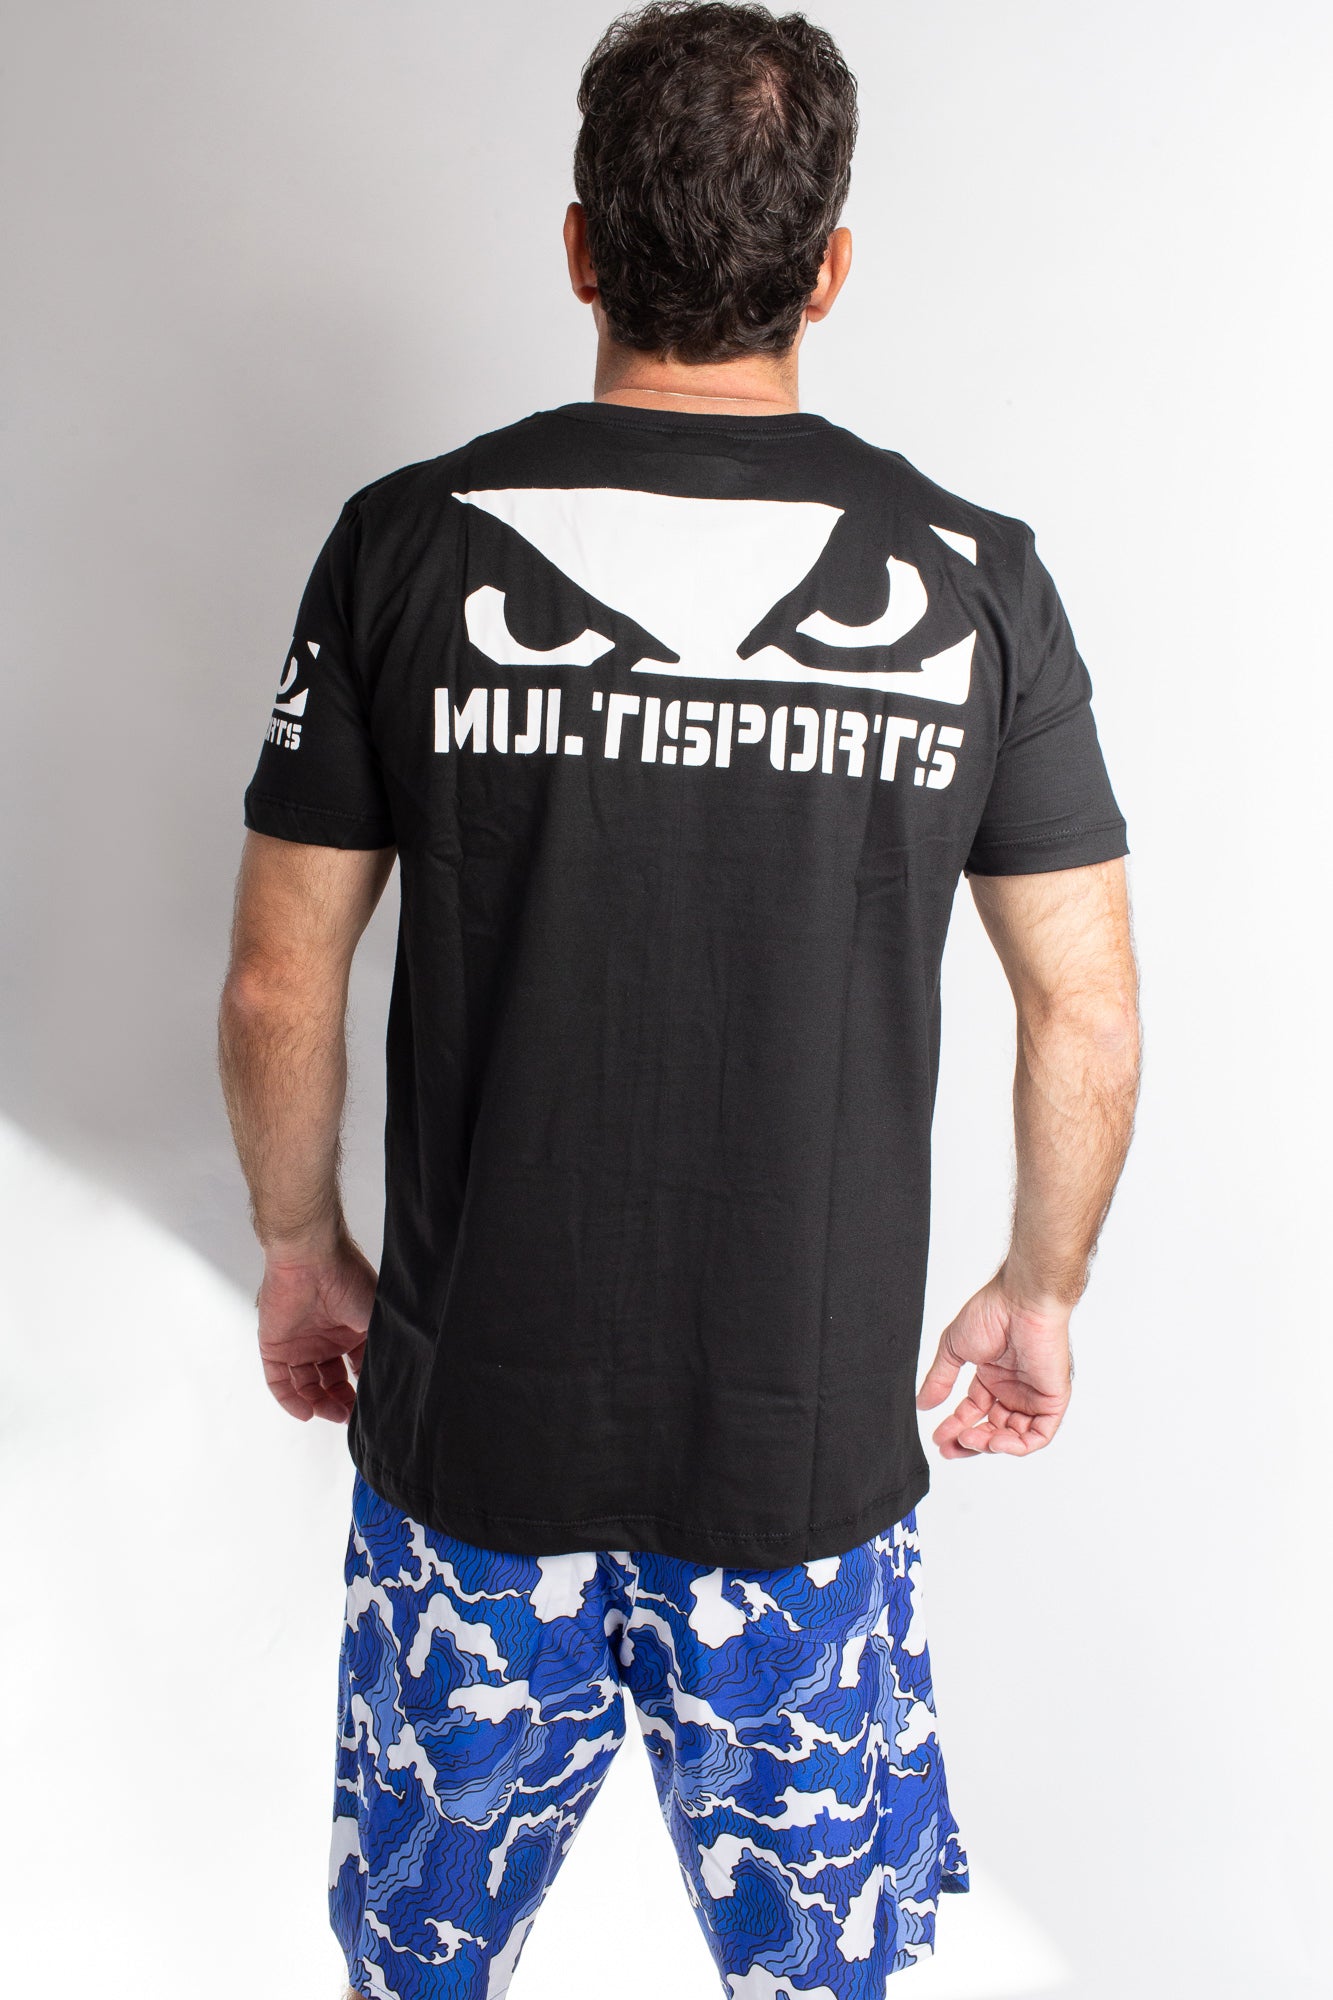 Camiseta Bad Boy MultiSports 5.0